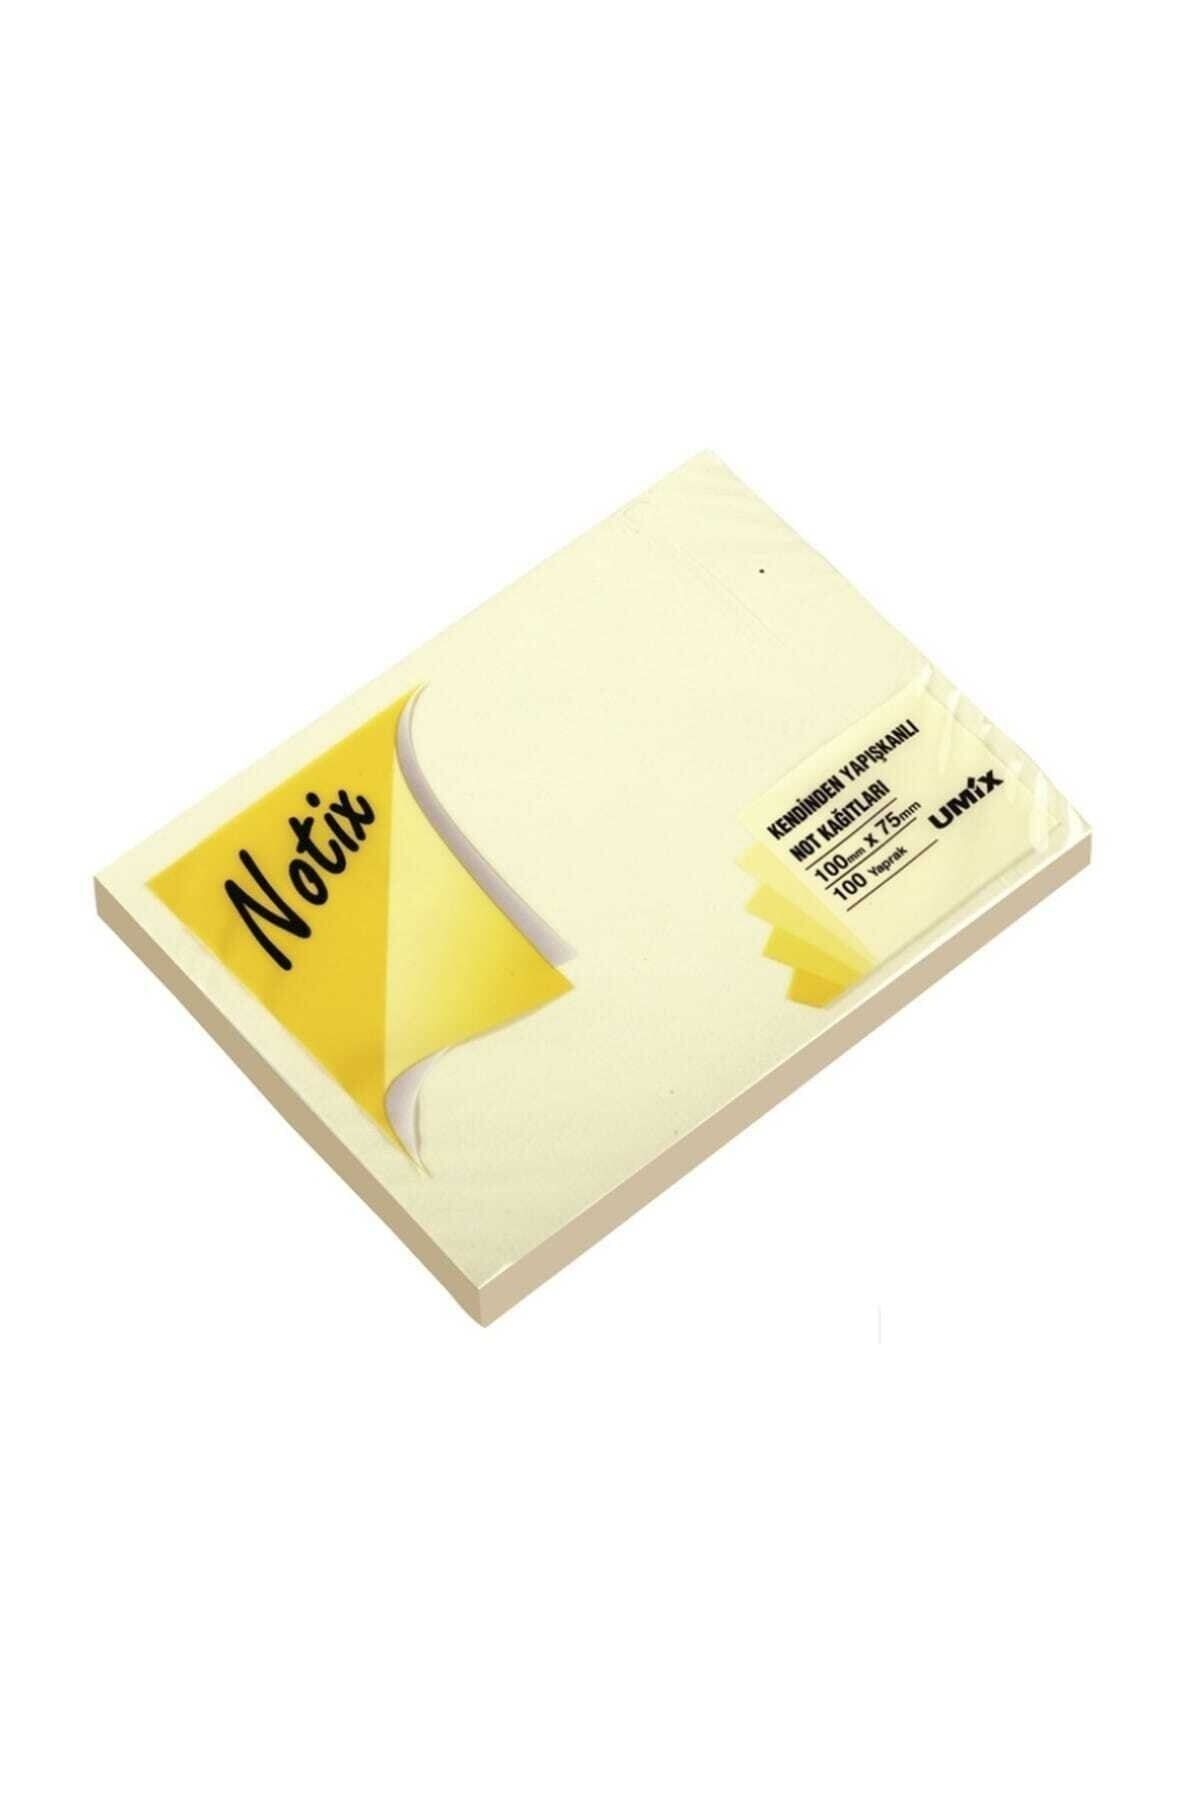 Umix Notix Yapışkanlı Notluk Sarı 100 Yp.100x75mm